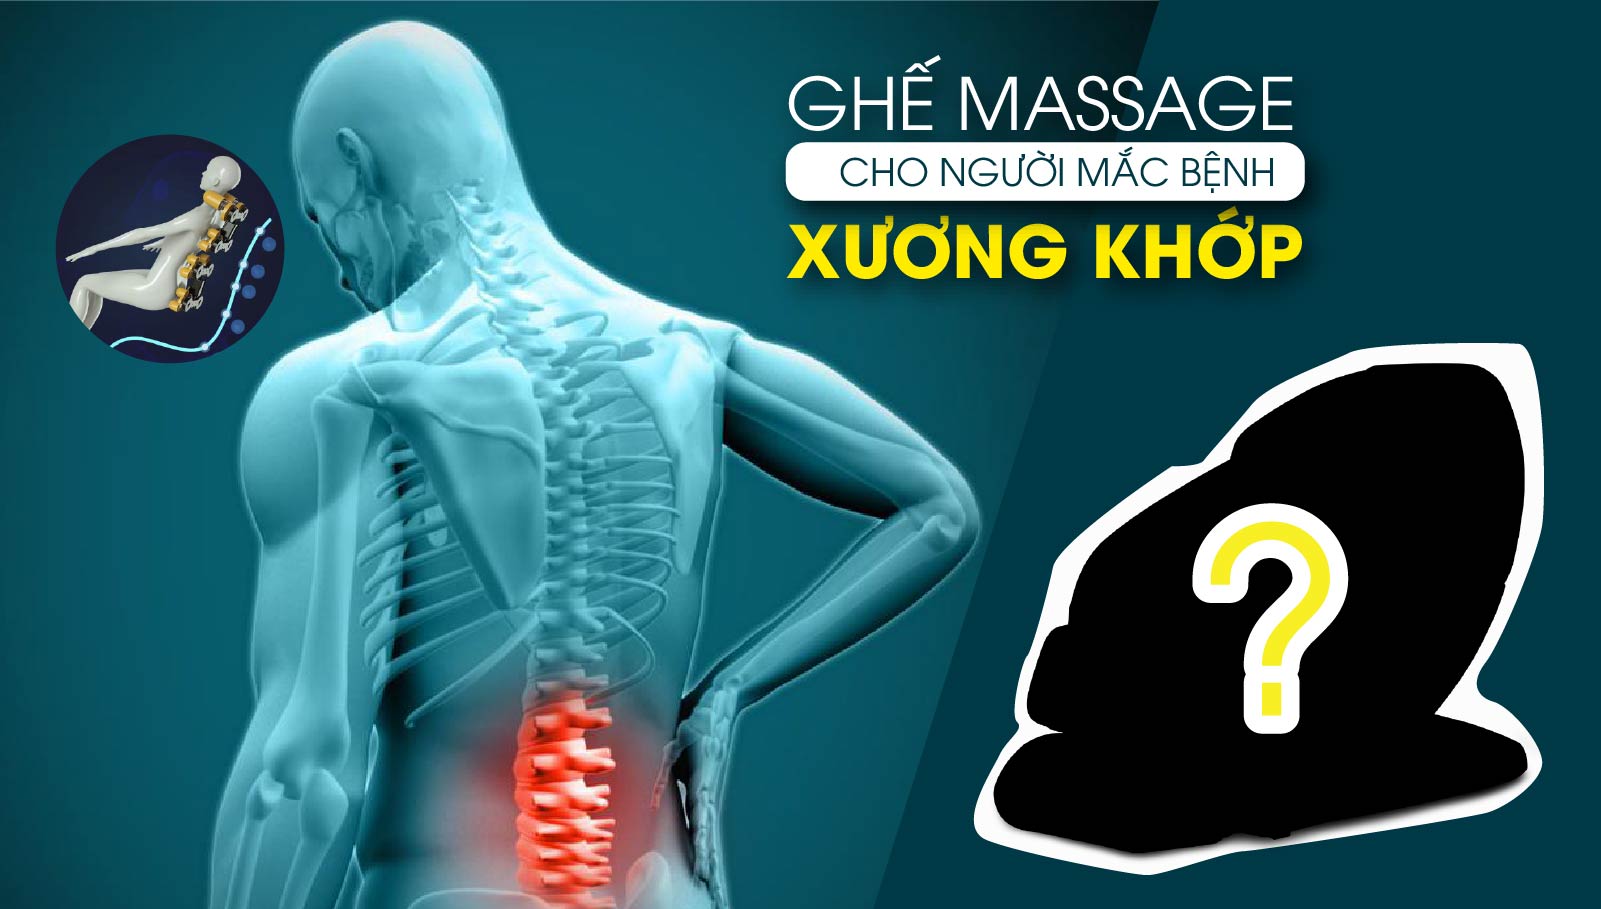 Ghế massage - Thiết bị chăm sóc sức khỏe hàng đầu cho người bị xương khớp